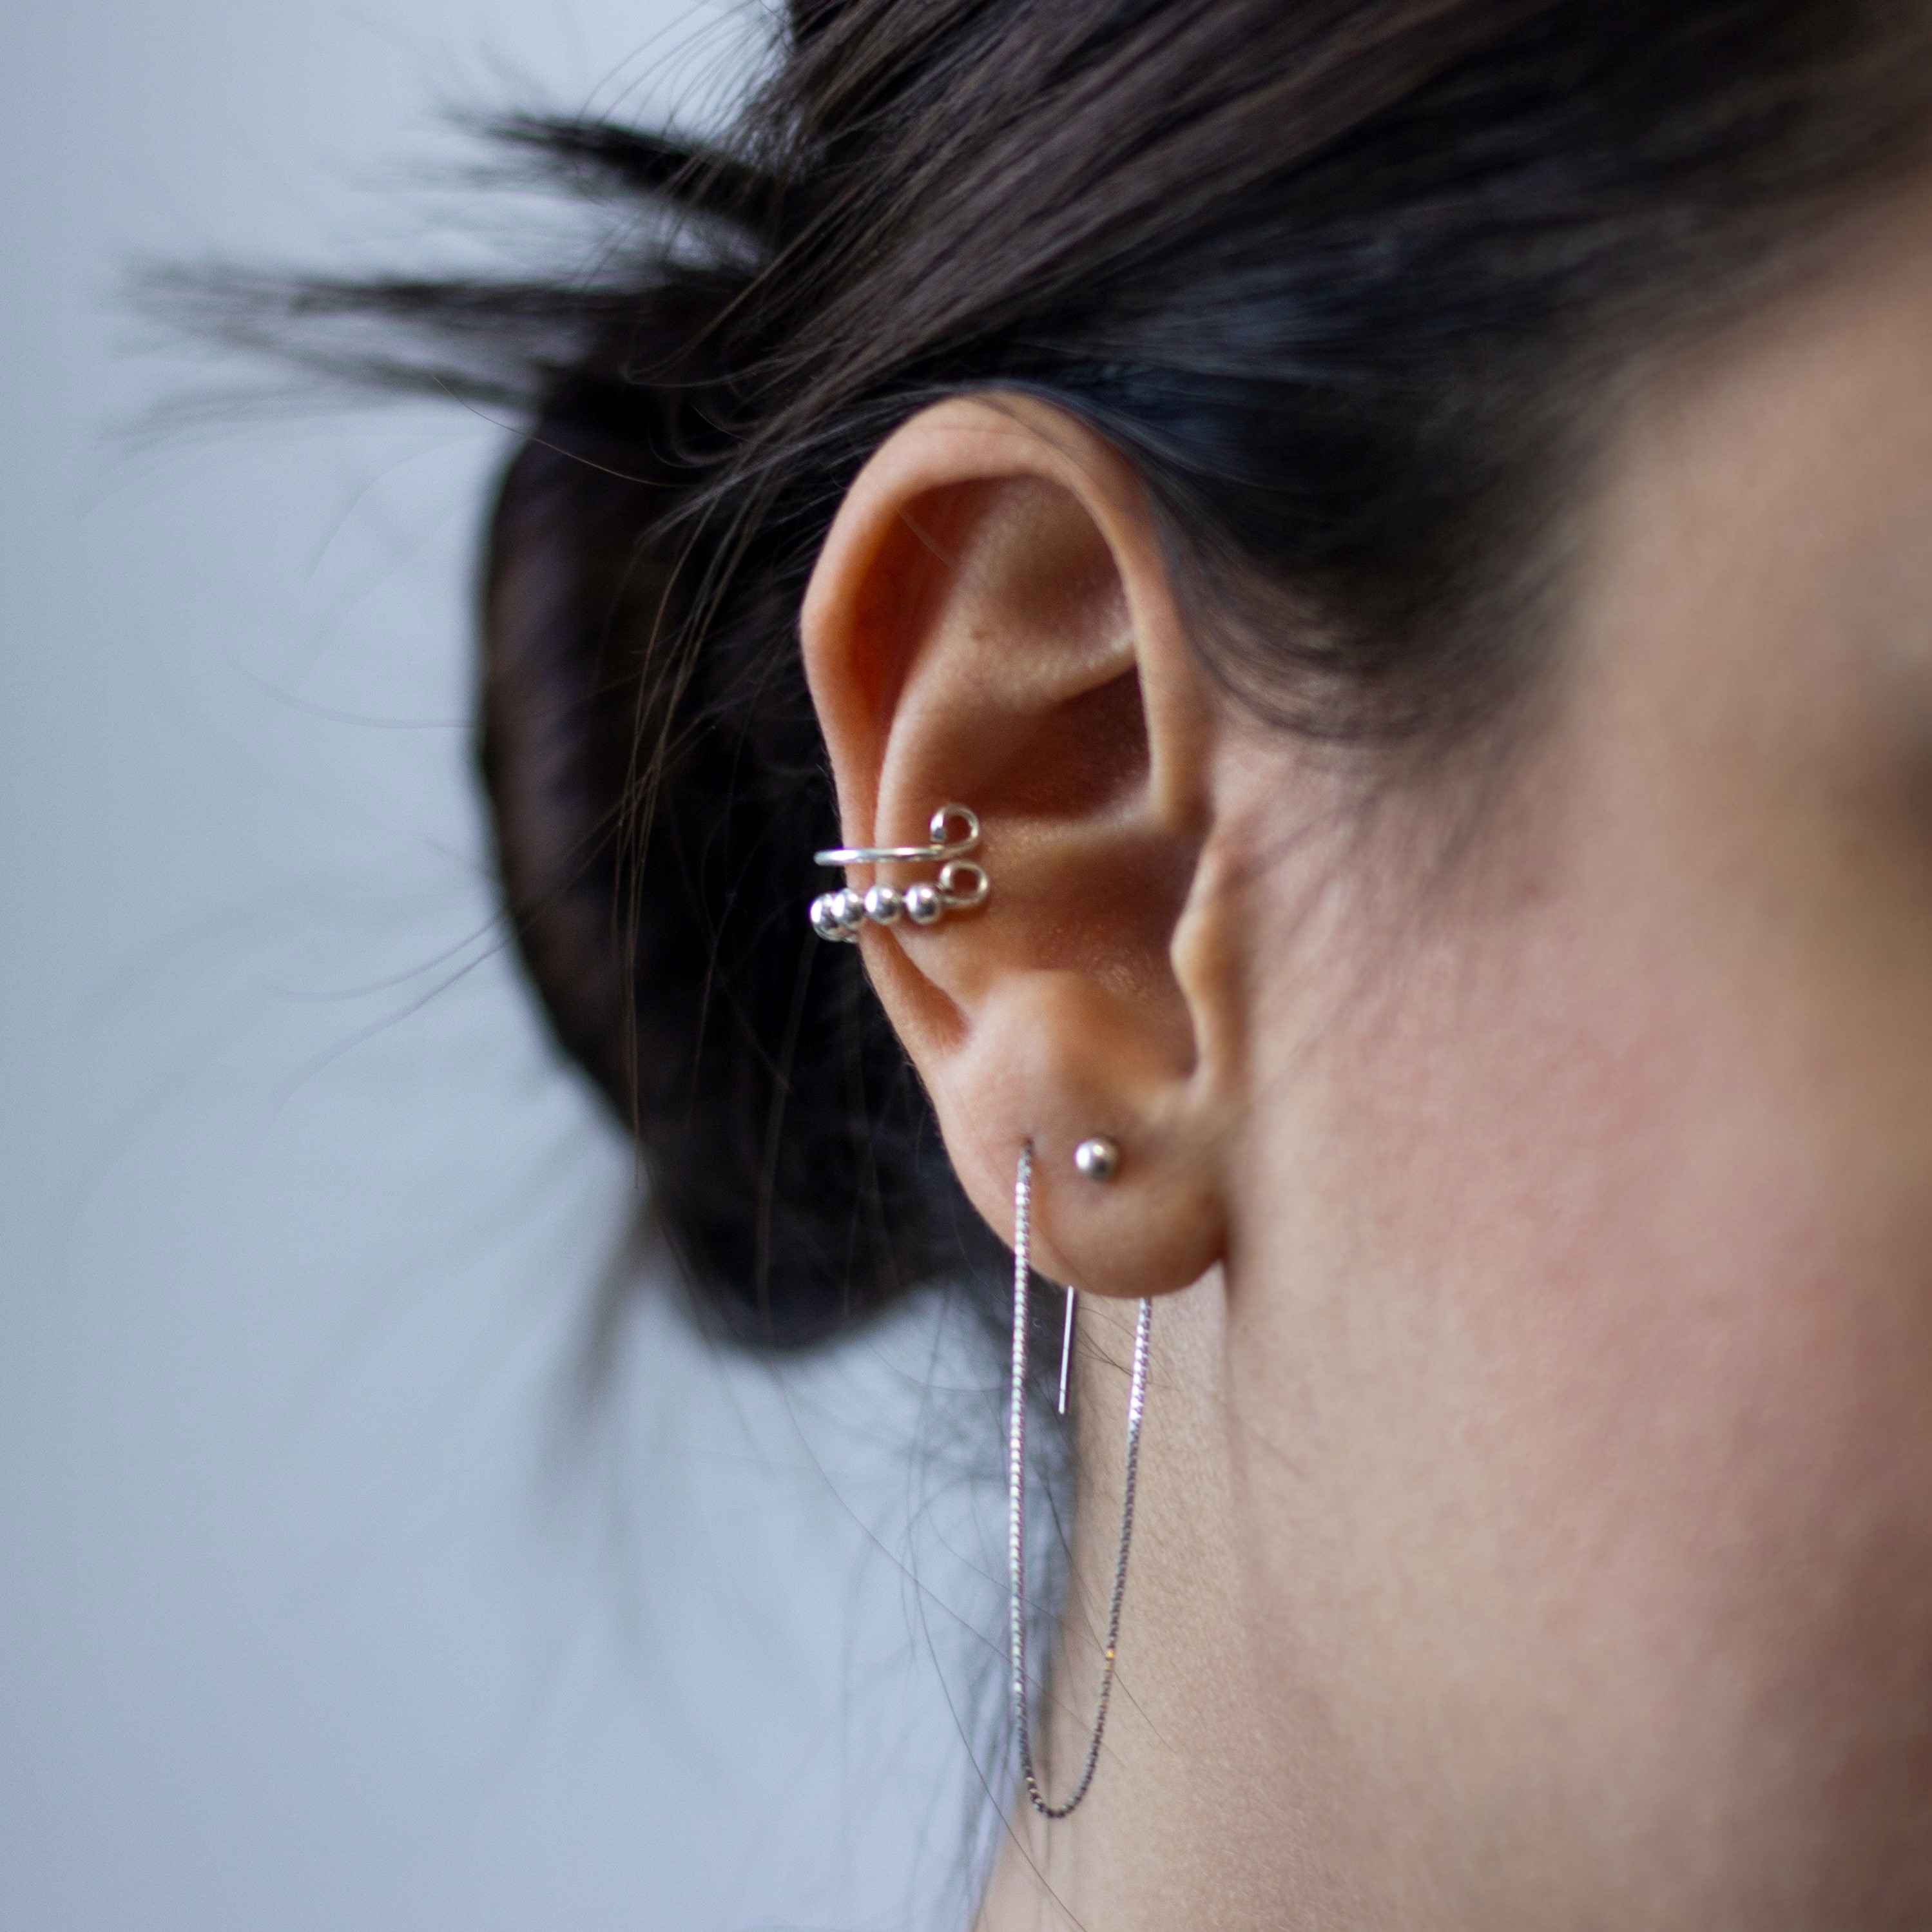 Woman showing off her ear piercings.